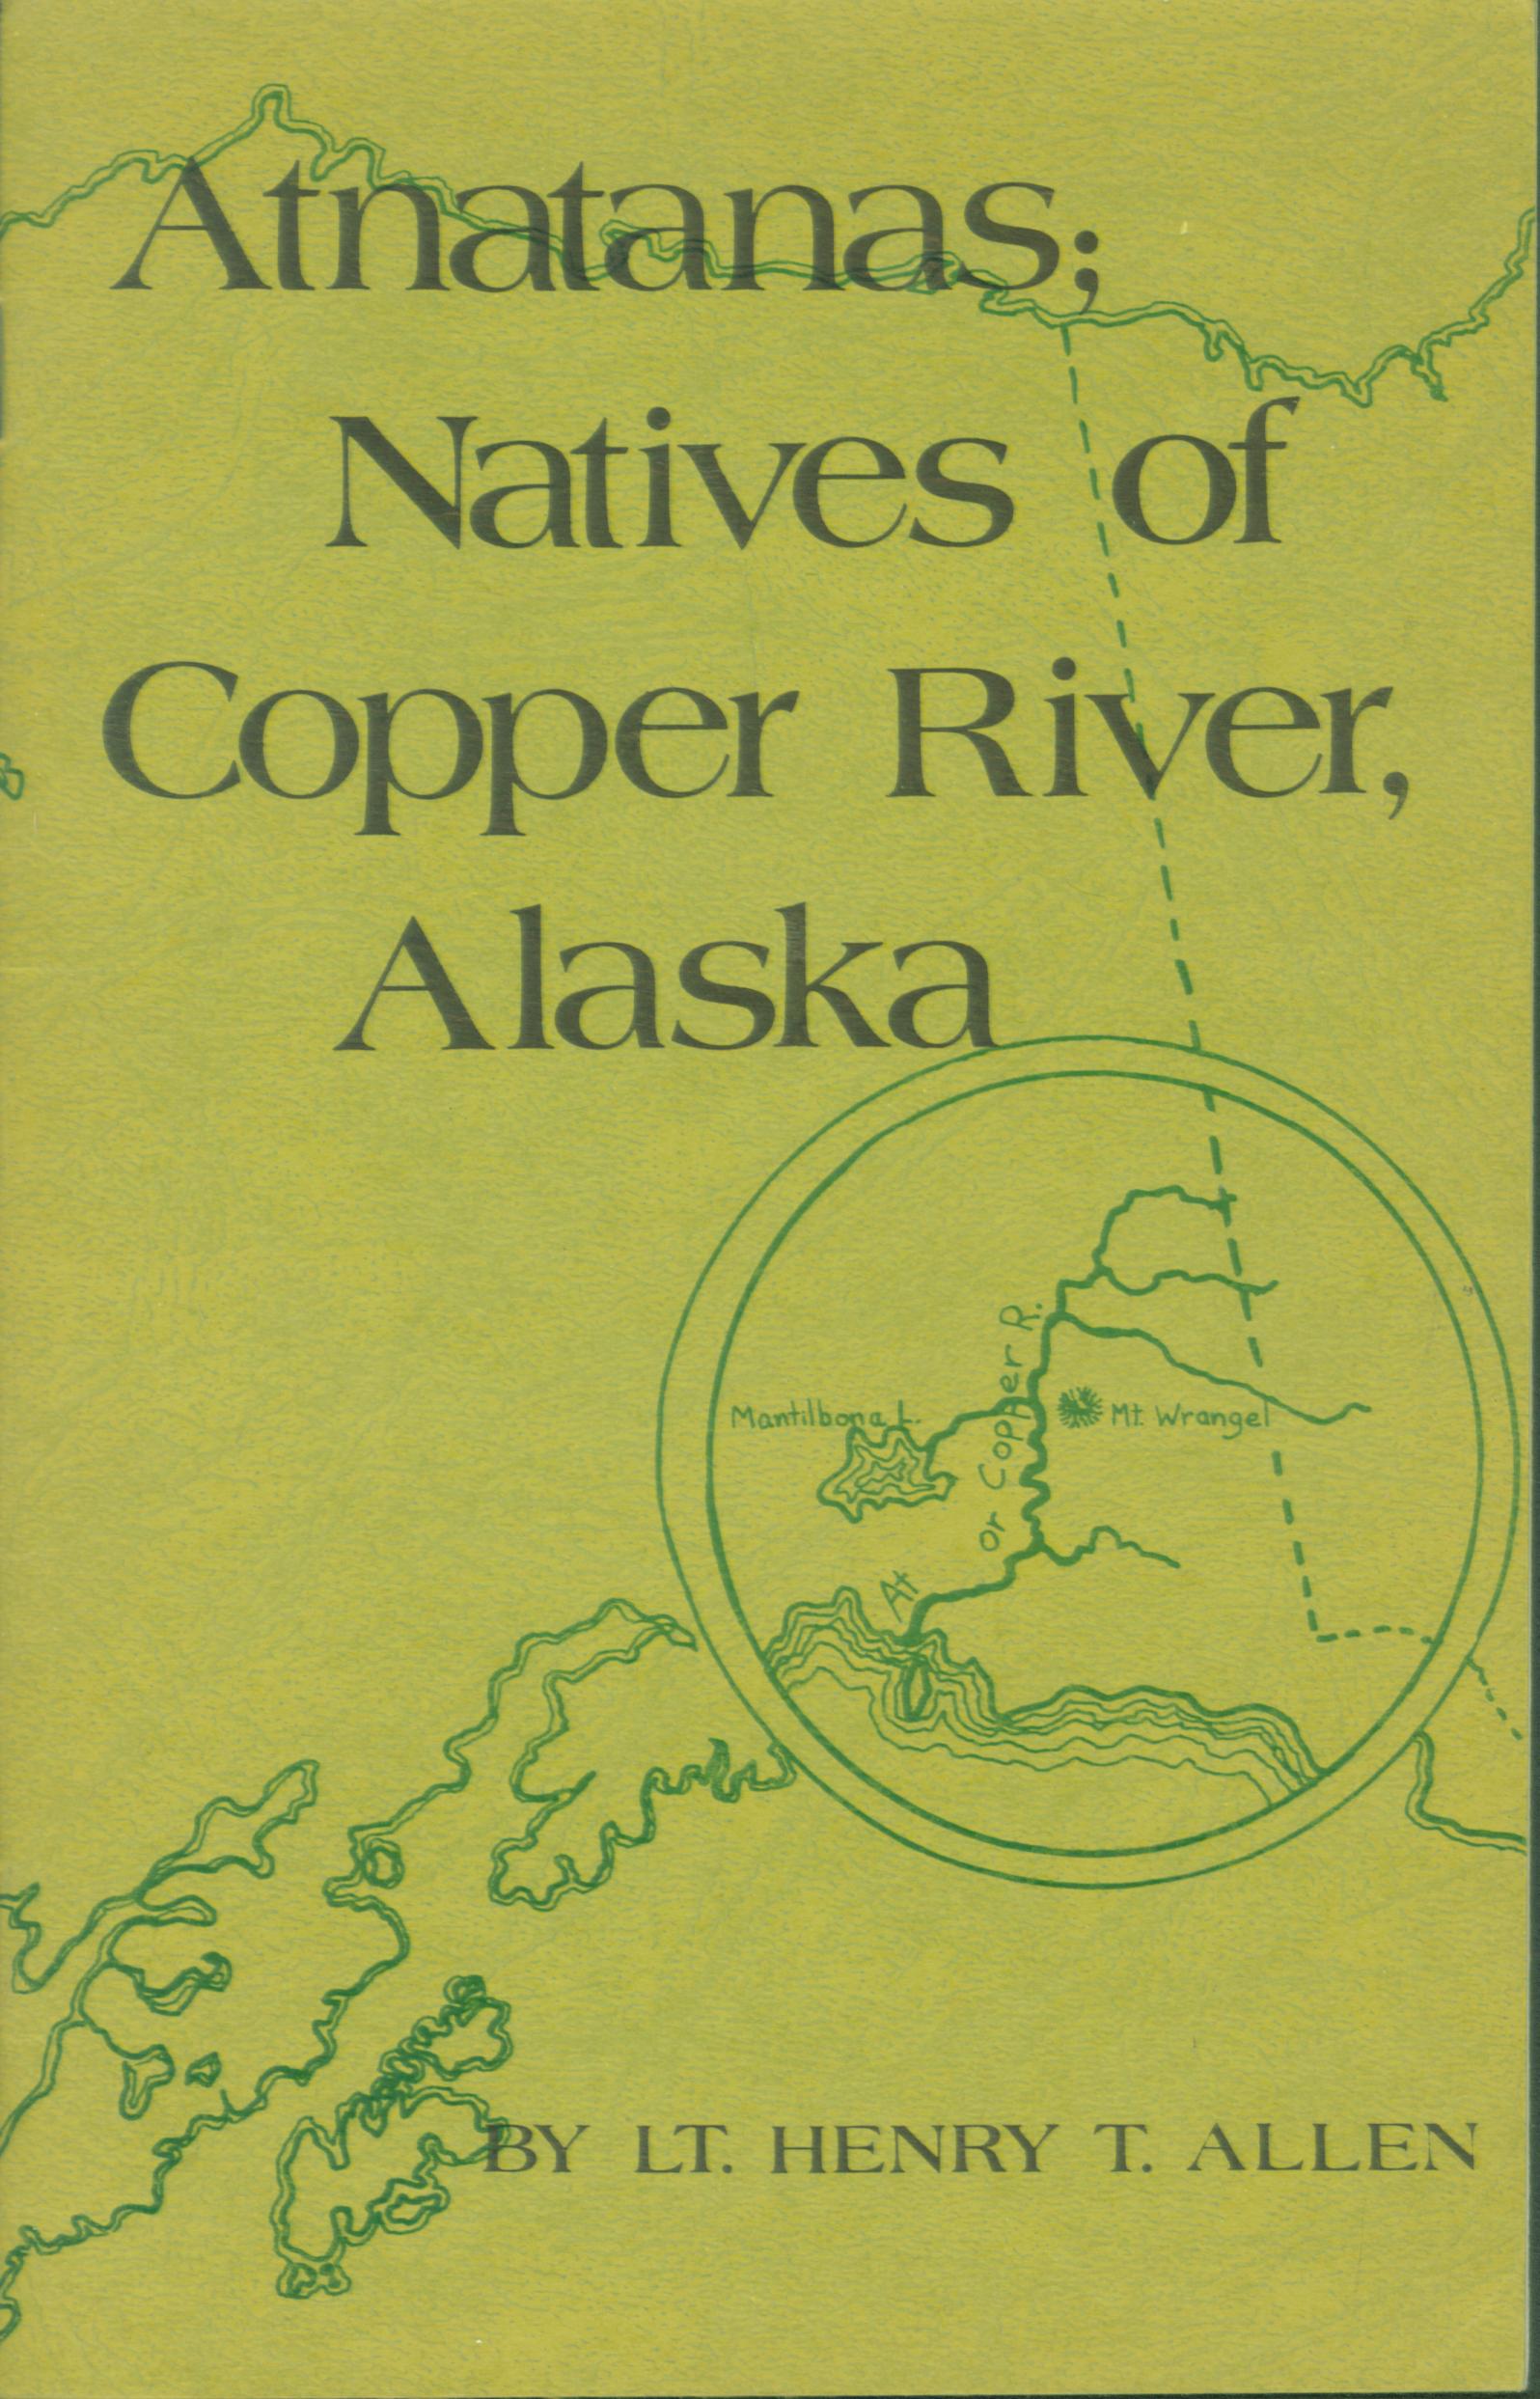 ATNATNAS: Natives of Copper River, Alaska.